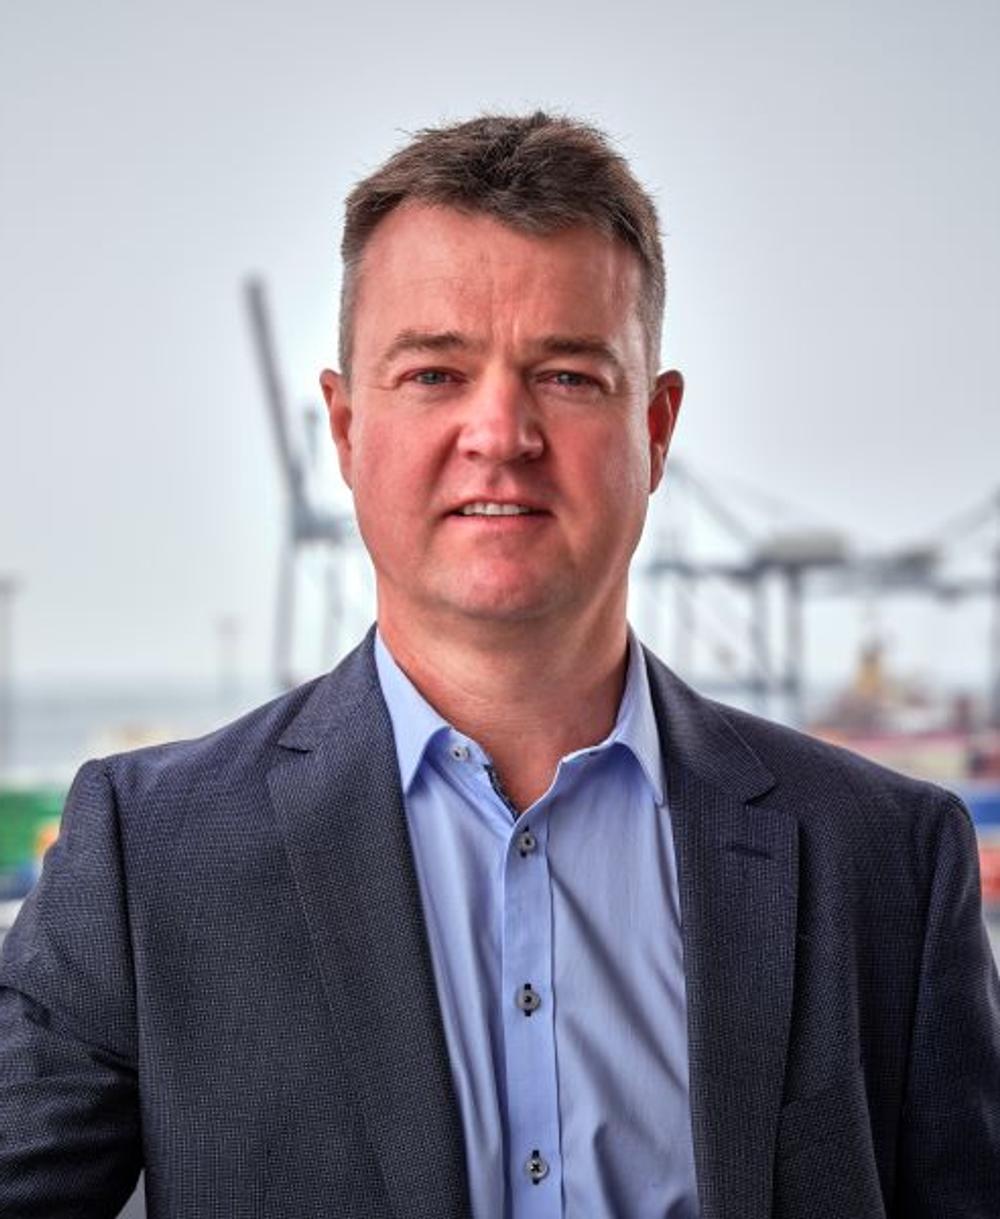 Thomas Haber Borch, CEO, Aarhus Havn